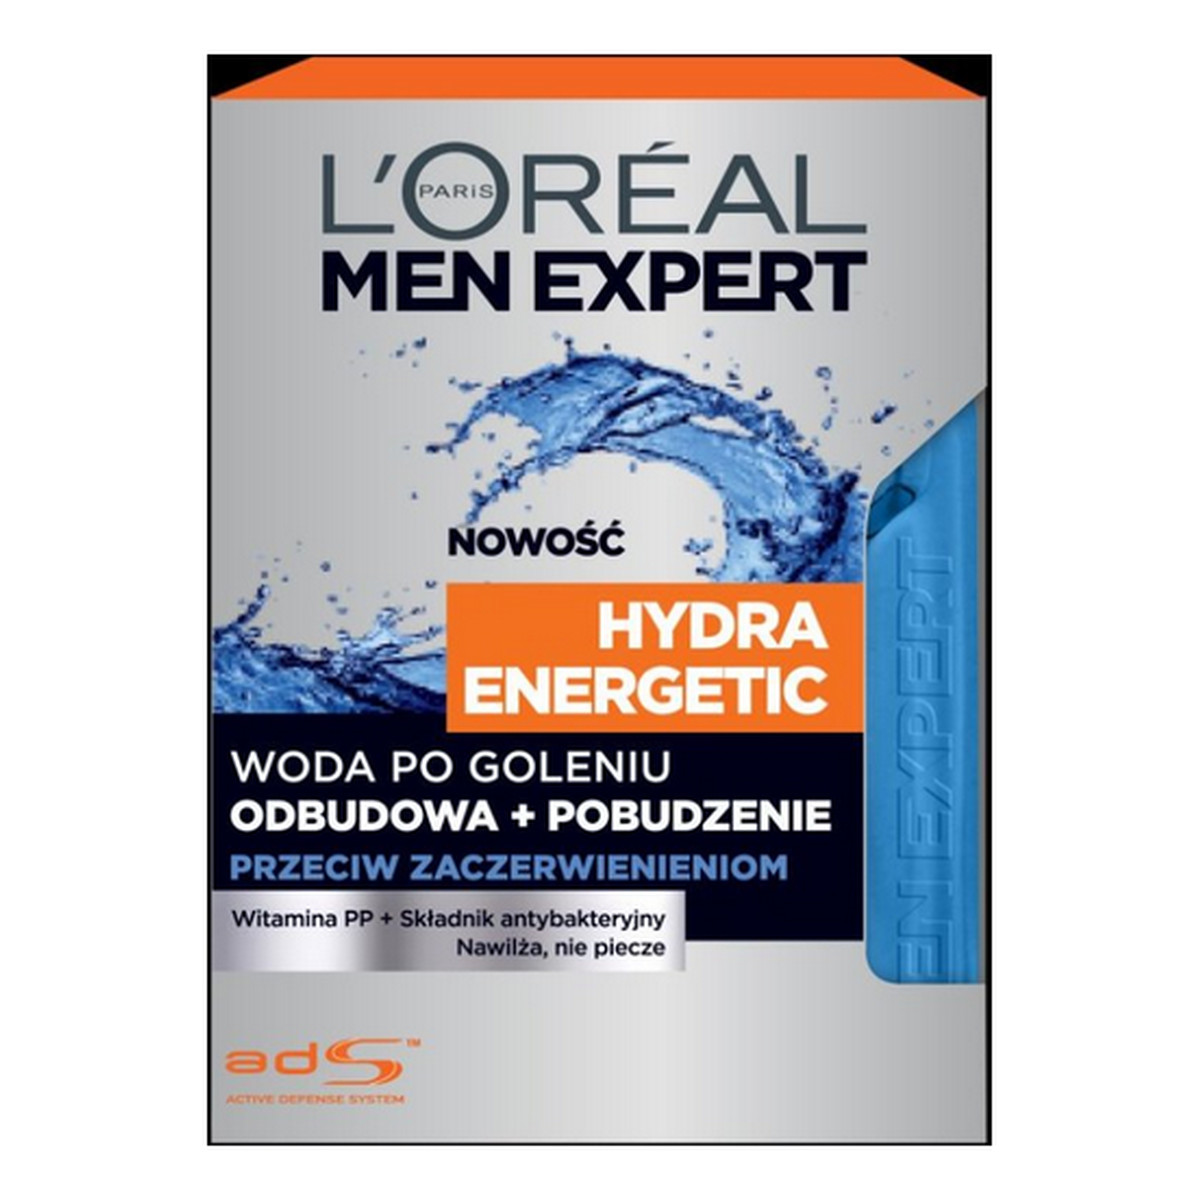 L'Oreal Paris Hydra Energetic Men Expert Woda Po Goleniu Przeciw Zaczerwienieniom 100ml